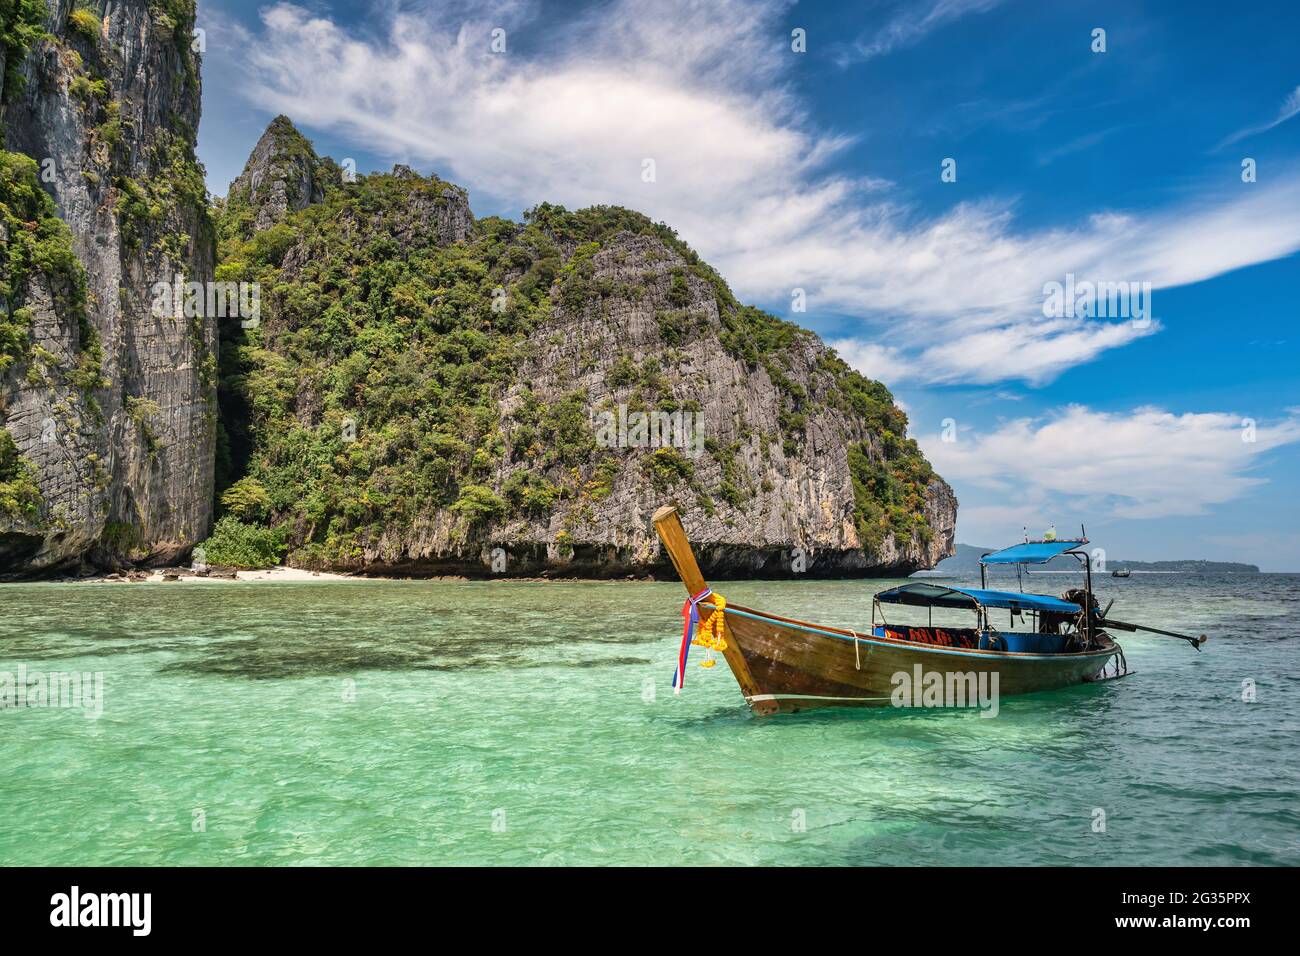 Vue sur les îles tropicales avec bateau à longue queue bleu océan eau de mer à Pileh Lagoon des îles Phi Phi, Krabi Thaïlande paysage nature Banque D'Images